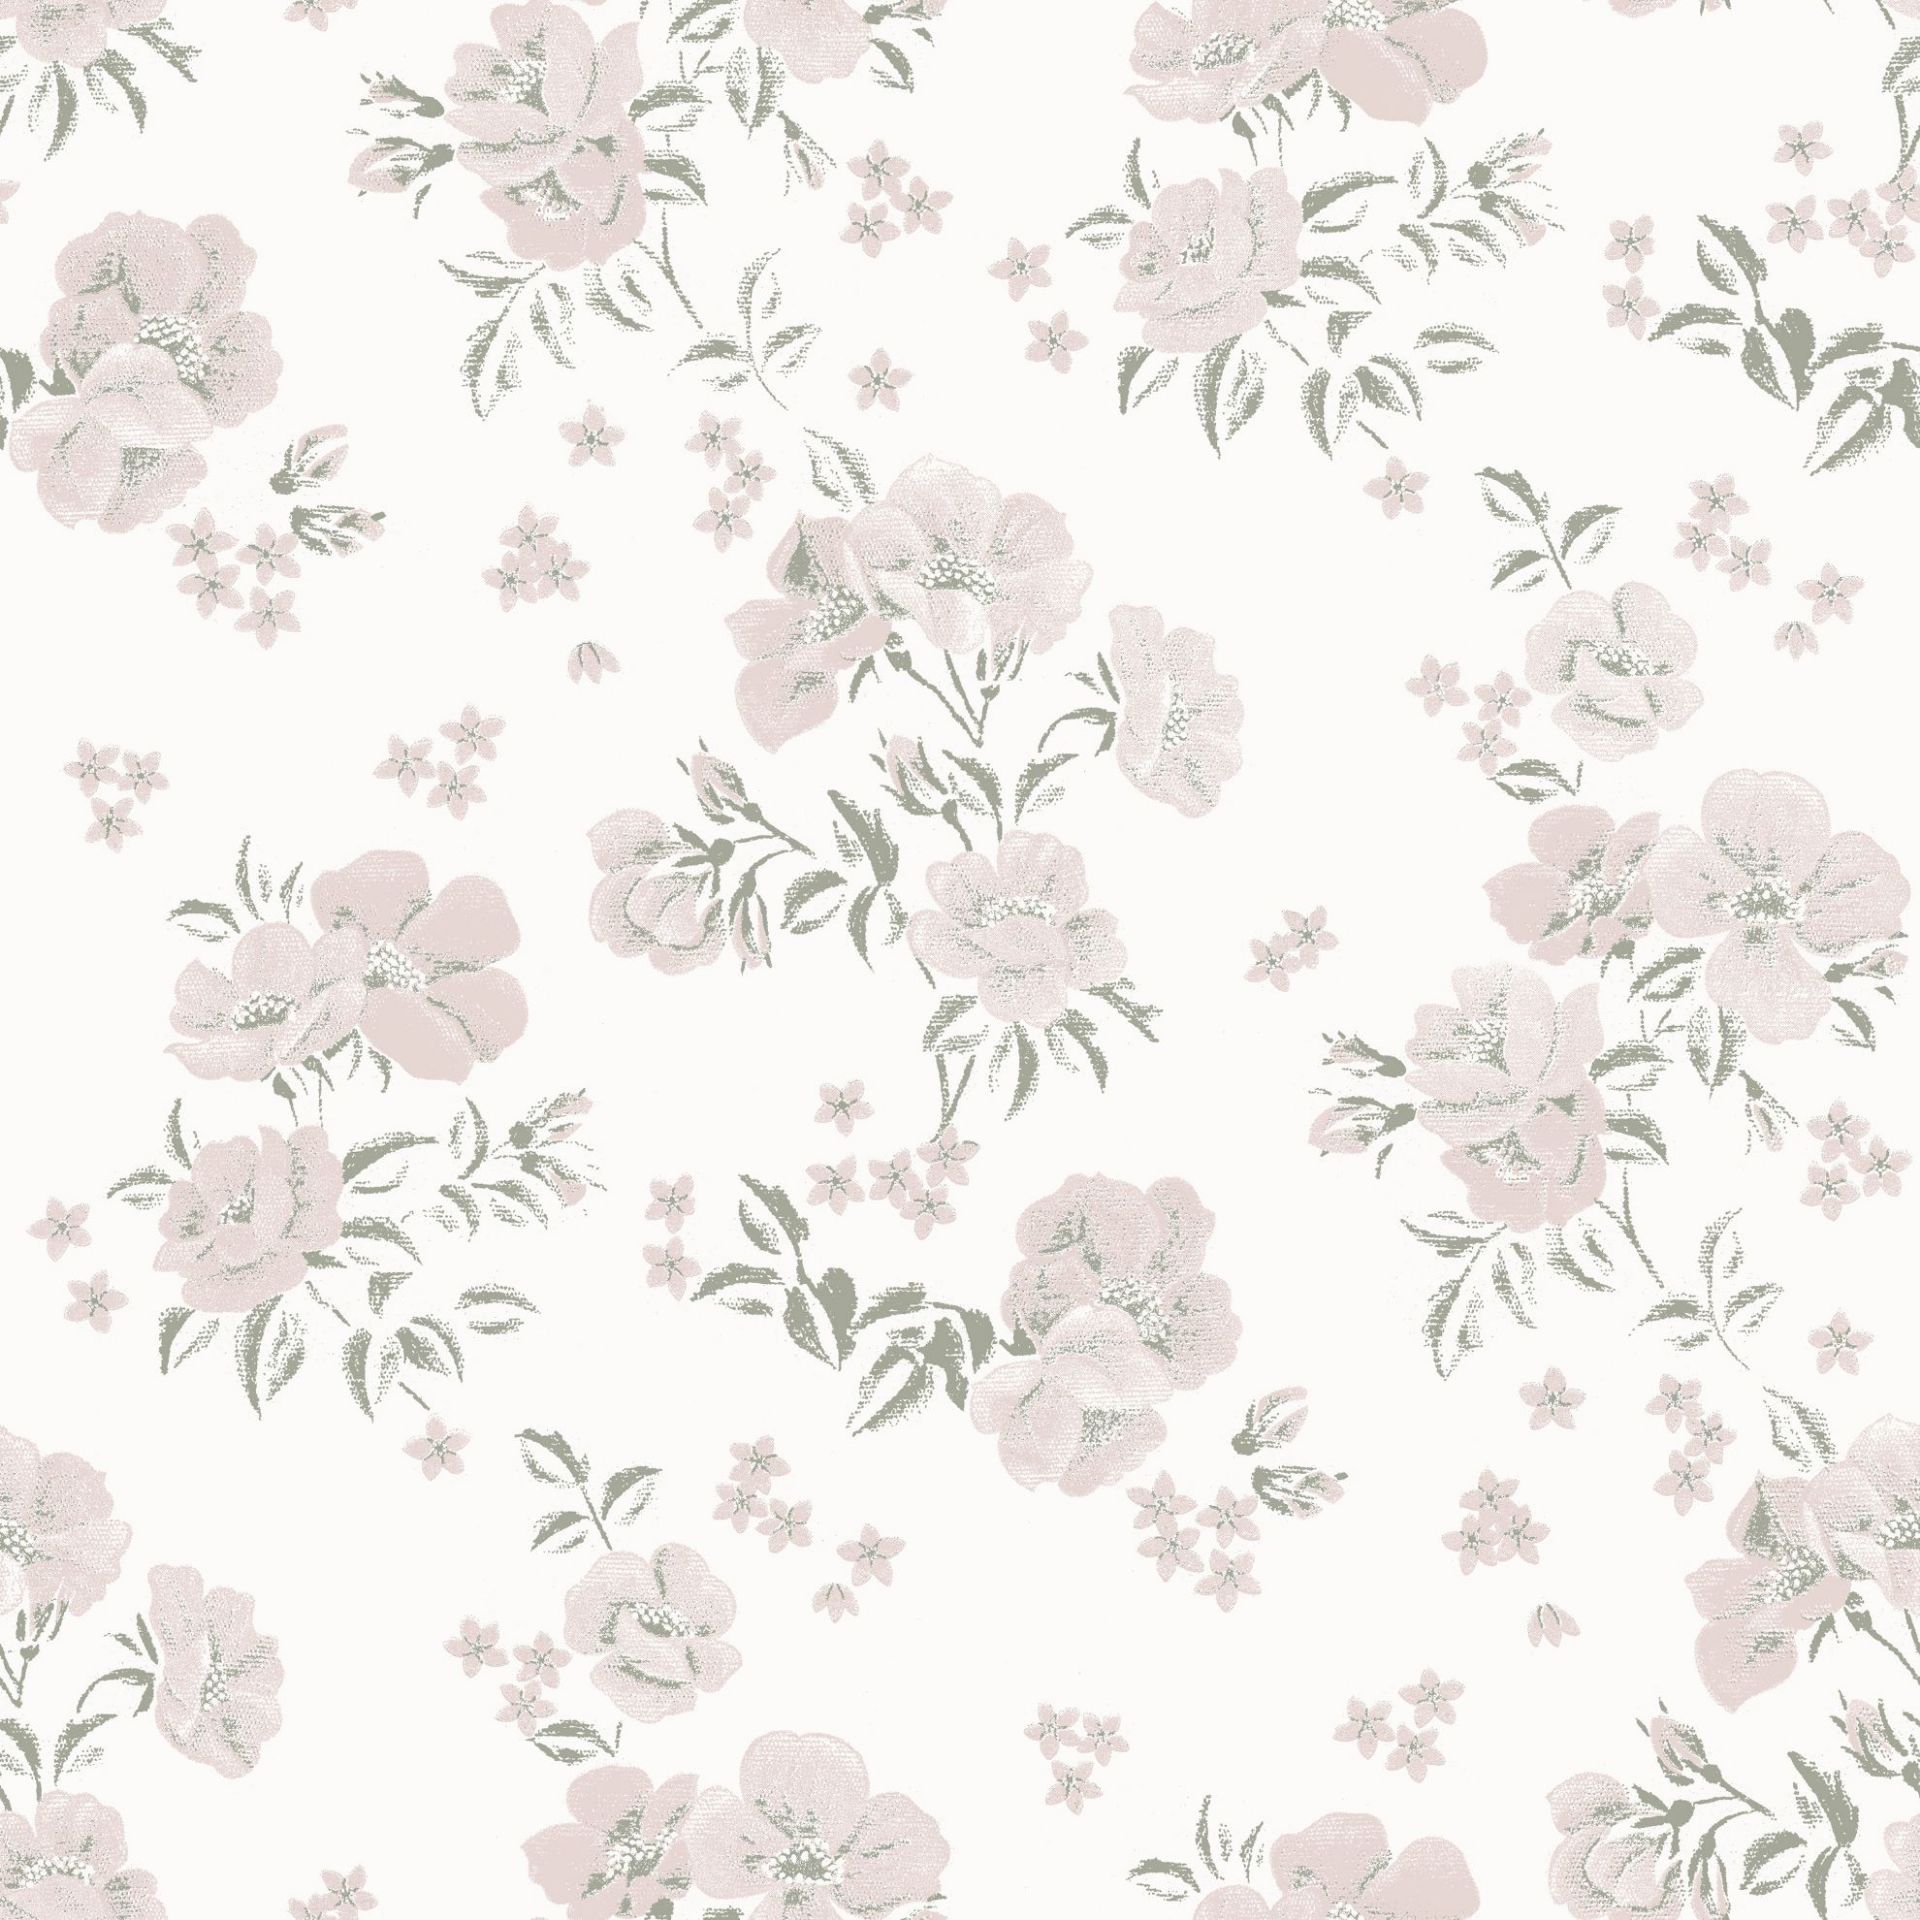 Nærbilde av Lycke Vilrosor 2. En tapet med rosa blomster med grønne blader, på hvit bakgrunn.